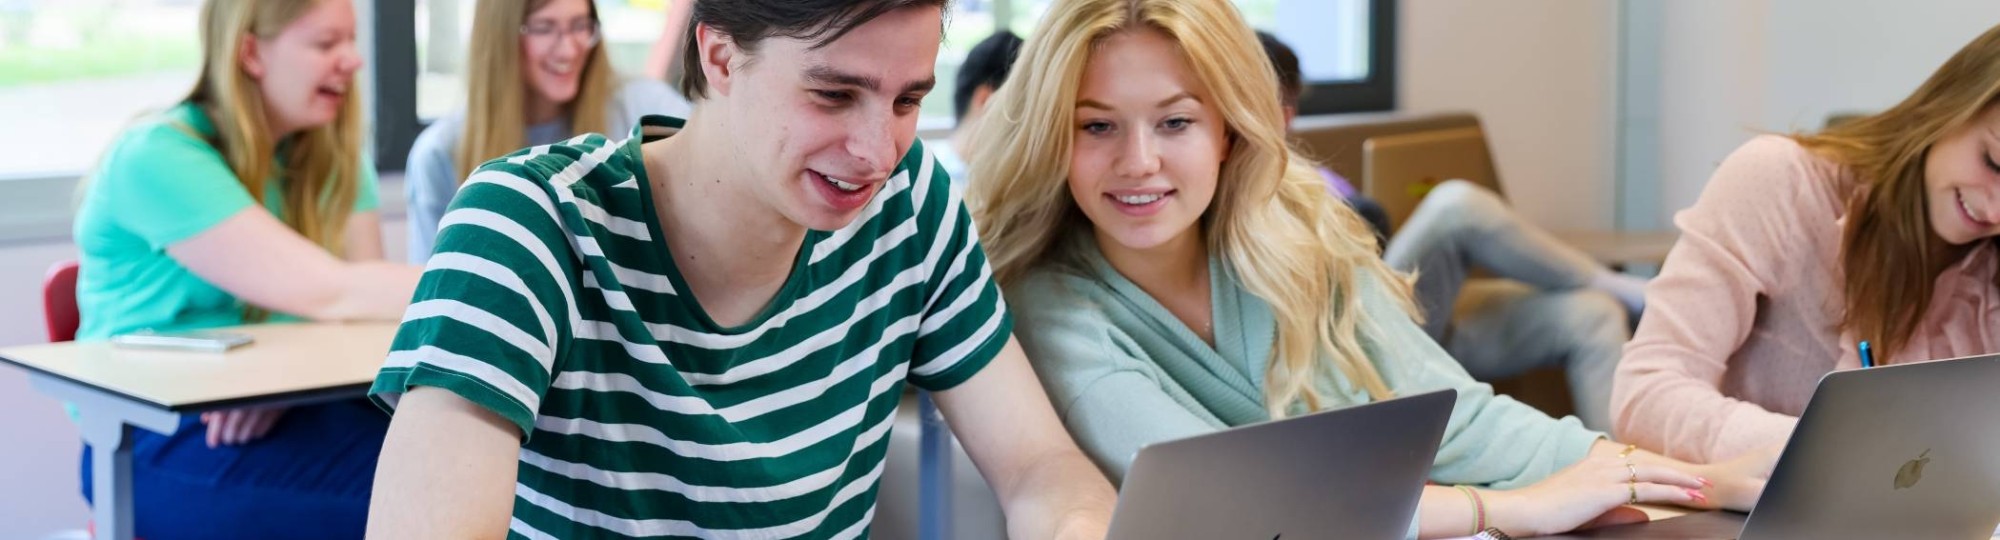 meerdere studenten van bedrijfskunde in een klaslokaal, twee studenten kijken naar een laptop